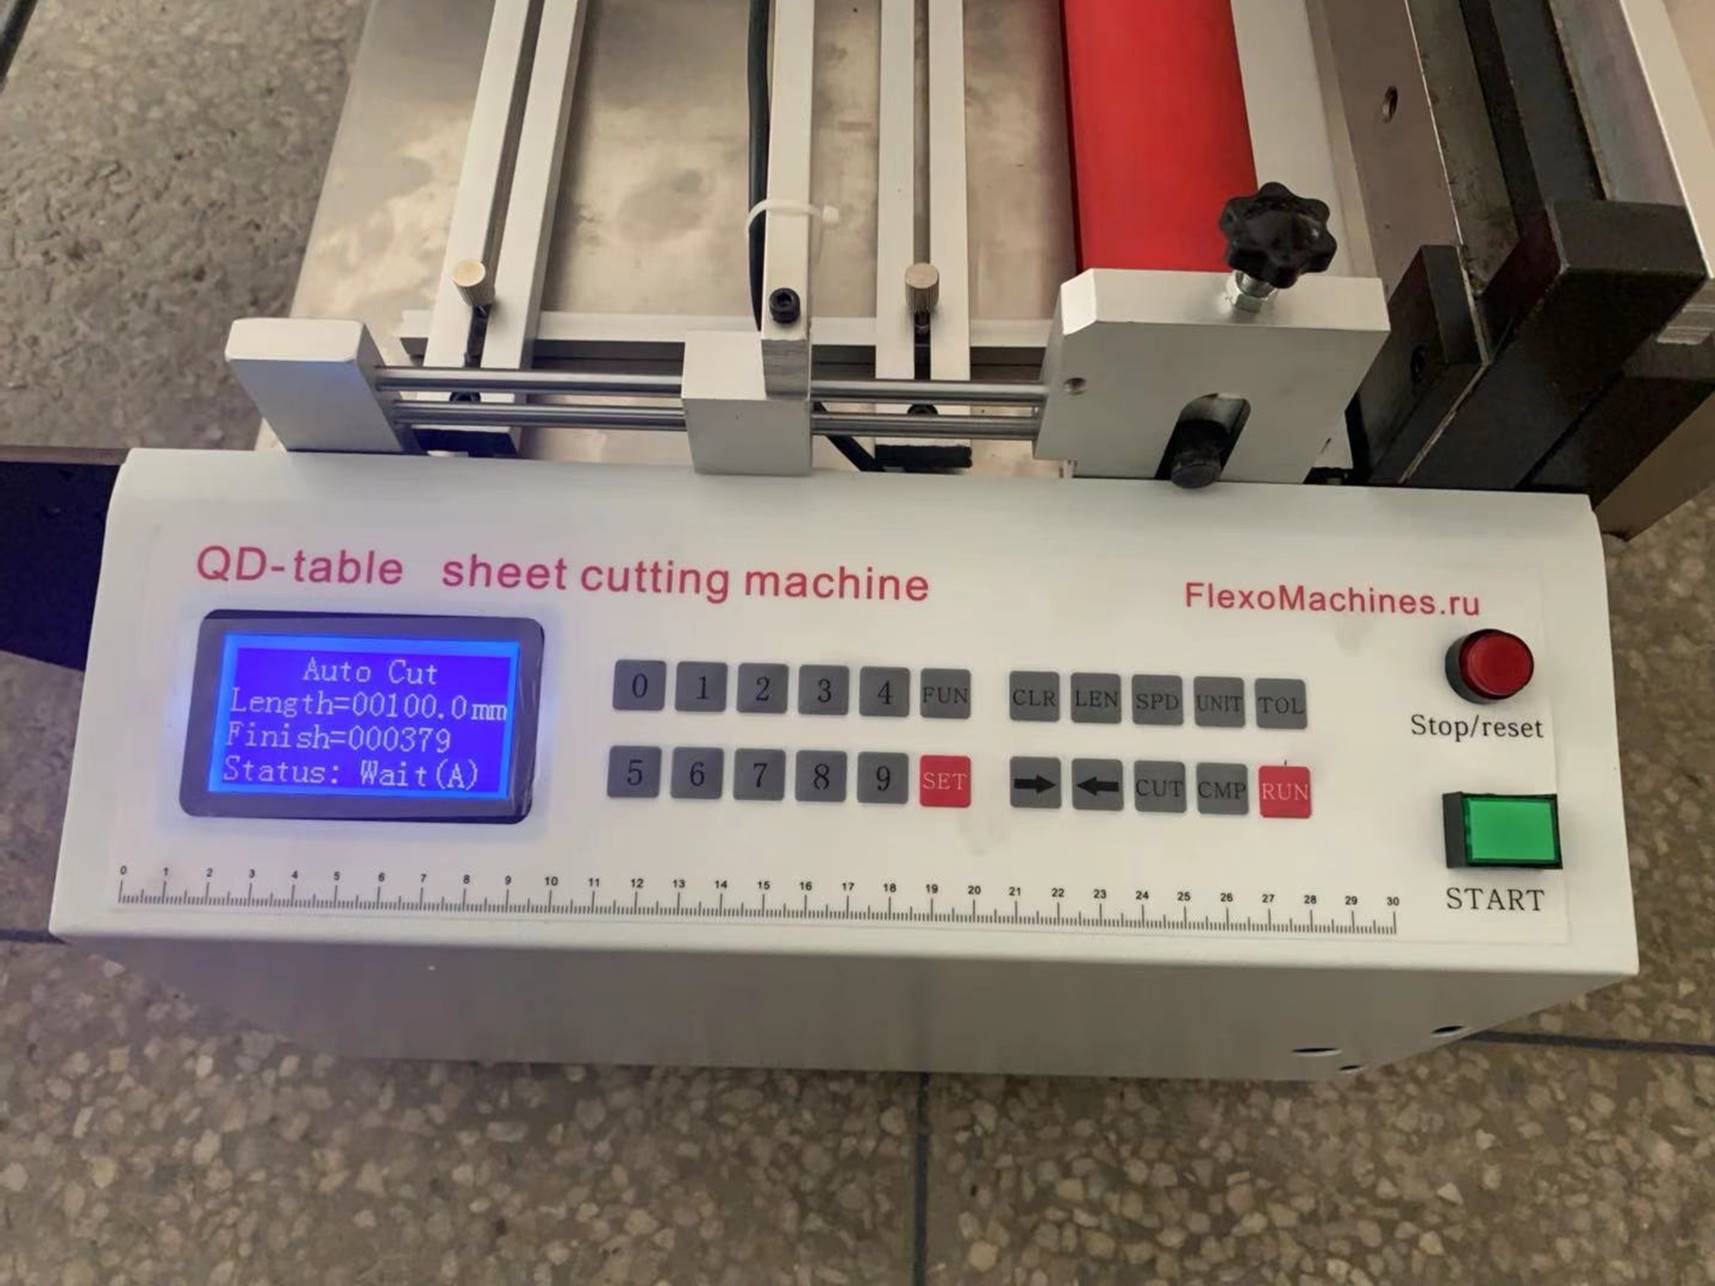 Листорезальная машина QD-600-table- подробные фотографии- листорезки - флаторезки в комплекте с системой продольной приводки по метке на материале и с отдельной стойкой размотки роля. Фотография 3.